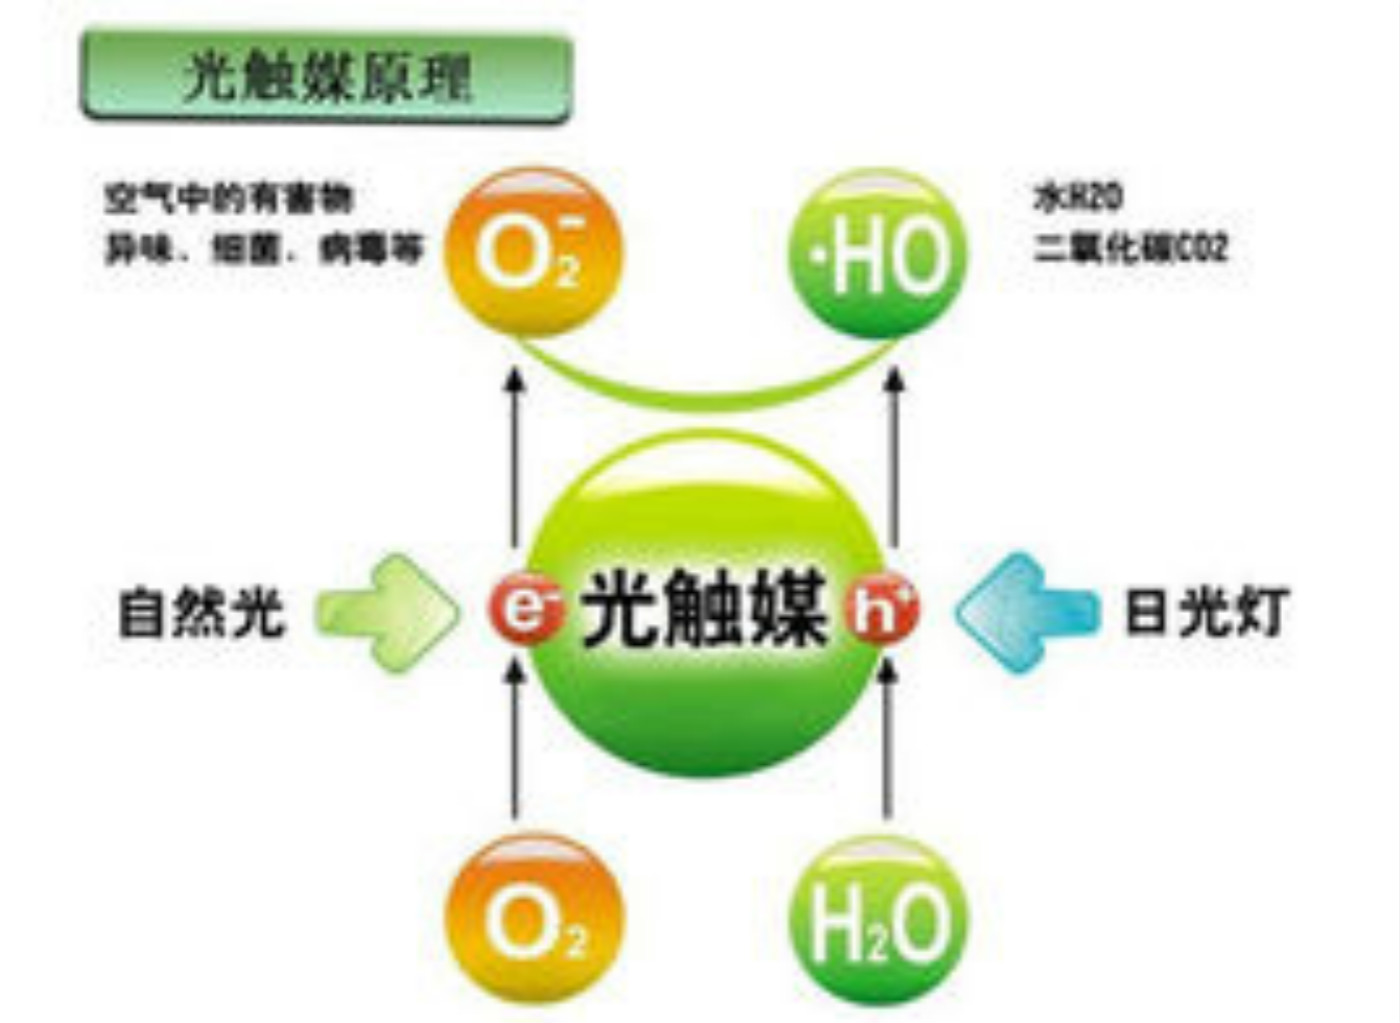 汇精纳米二氧化钛光触媒用于空气净化